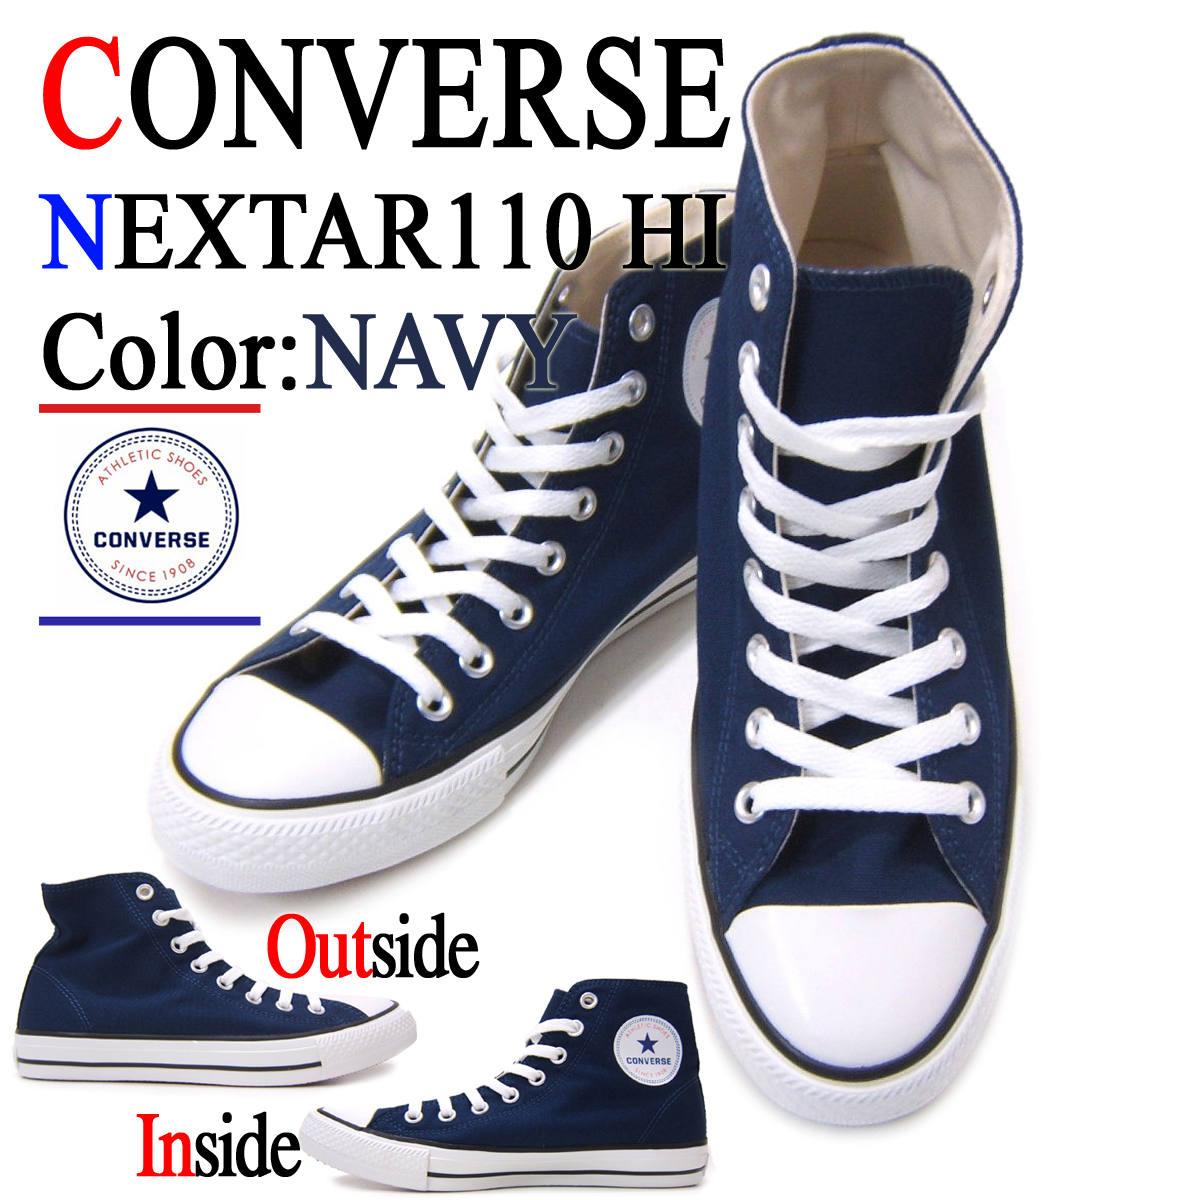 elvis converse shoes